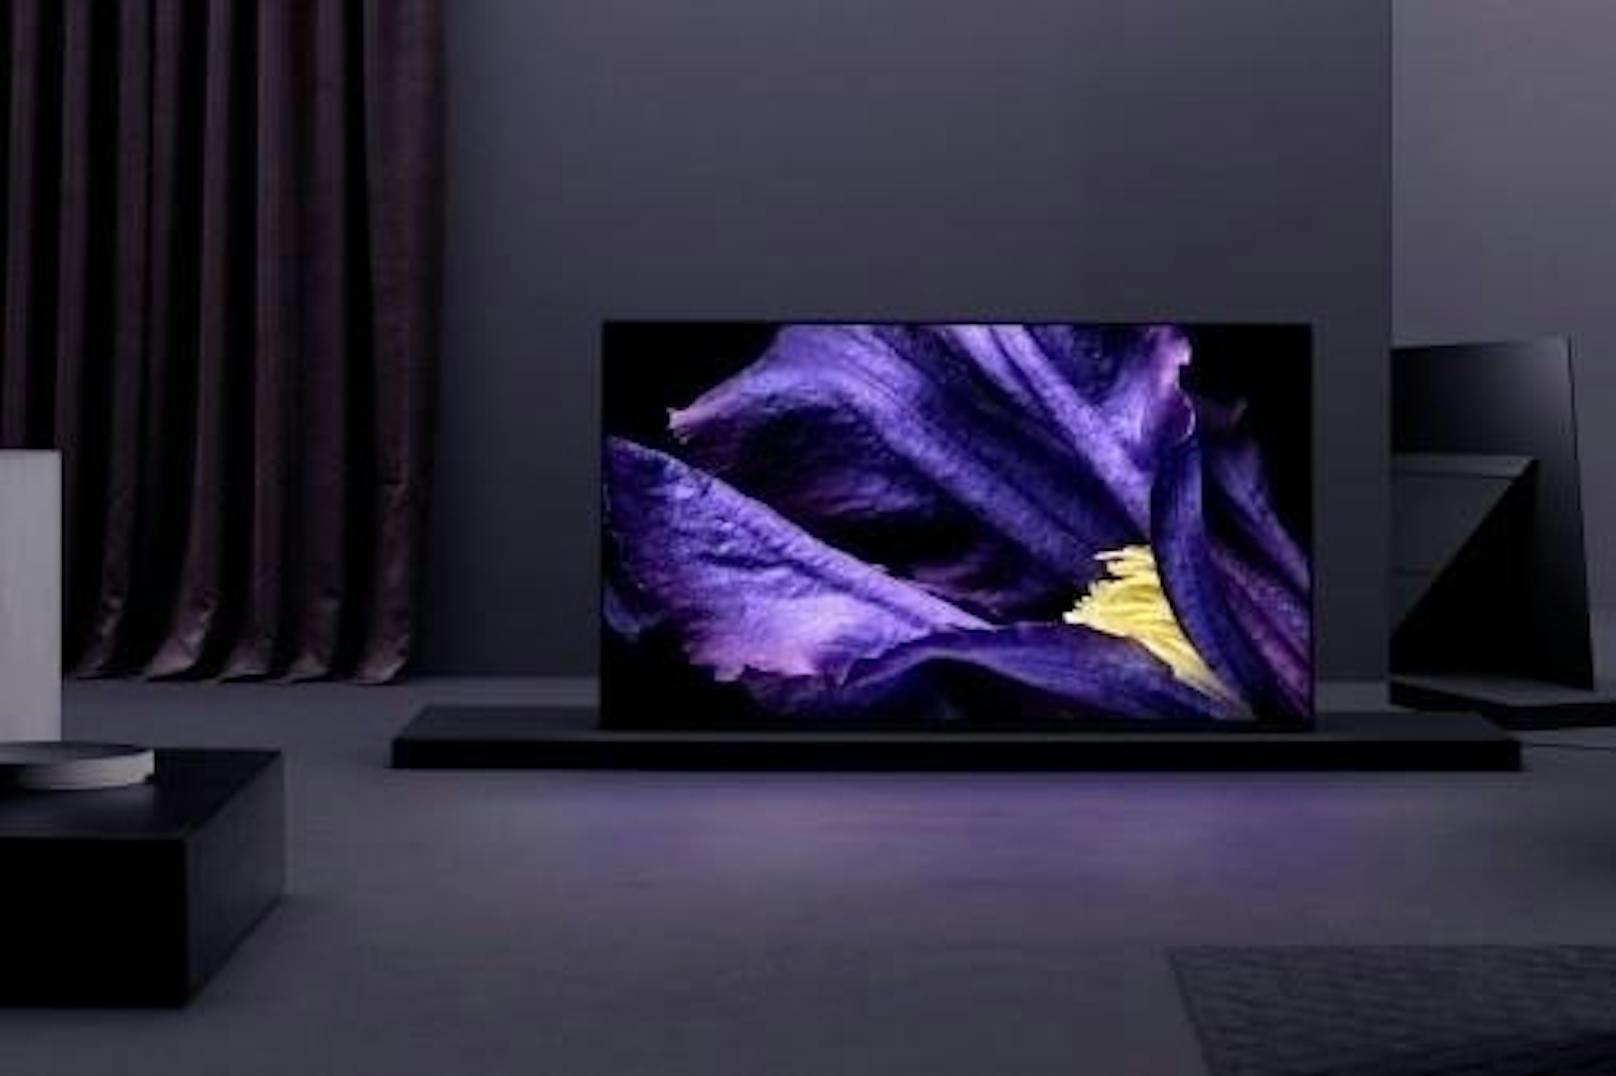 Die neuen OLED TVs der AF9-Serie und die Premium LCD TVs der ZF9-Serie sind ab sofort die TV-Aushängeschilder von Sony. Sowohl die AF9- als auch die ZF9-Serie nutzen Android TV als Betriebssystem. Der neue AF9 TV und sein OLED Display sorgen für eine meisterhafte Verschmelzung des Seh- und Hörerlebnisses. Der TV besteht lediglich aus einem glatten Bildschirm und einem eleganten Standfuß. Der Rahmen der ZF9 Fernseher hat eine schwarze, dezent gemaserte Oberfläche ? vergleichbar mit der Oberfläche einer Spiegelreflexkamera. Er hebt sich dadurch deutlich vom metallischen Look des Fernsehers ab. Der Standfuß ist aus dezentem Aluminium. Die Preise und Erscheinungstermine sind noch nicht bekannt.